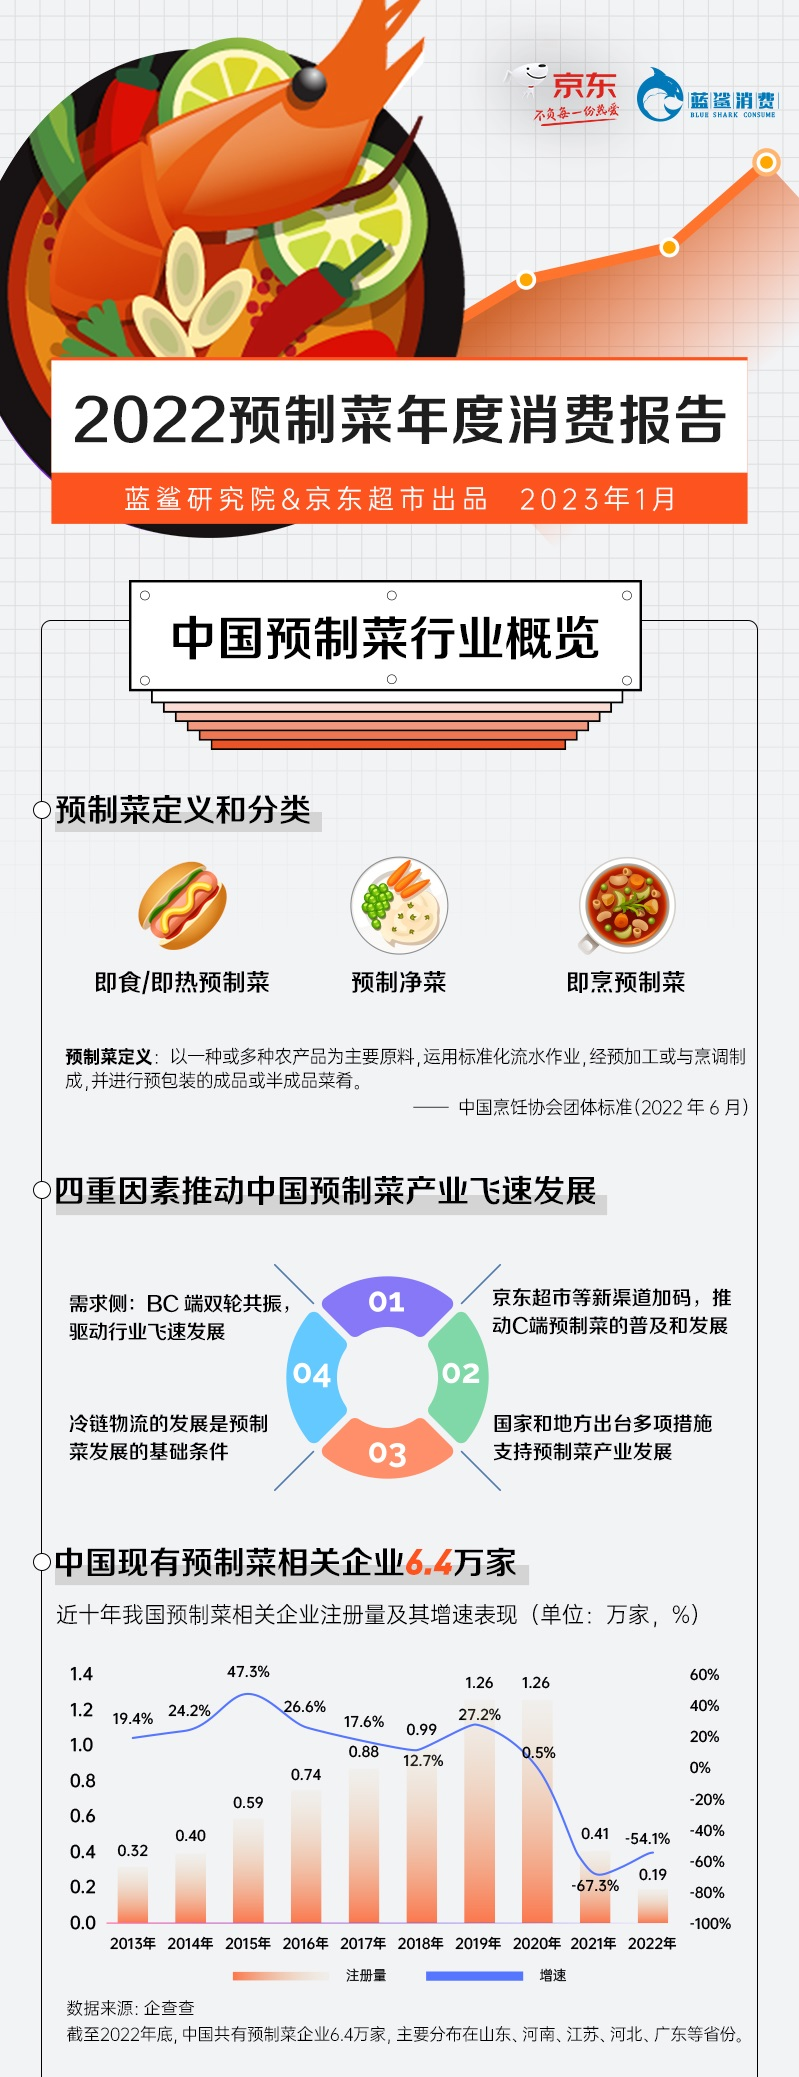 《2022预制菜年度消费报告》发布京东超市6大方面一揽子举措规范行业发展